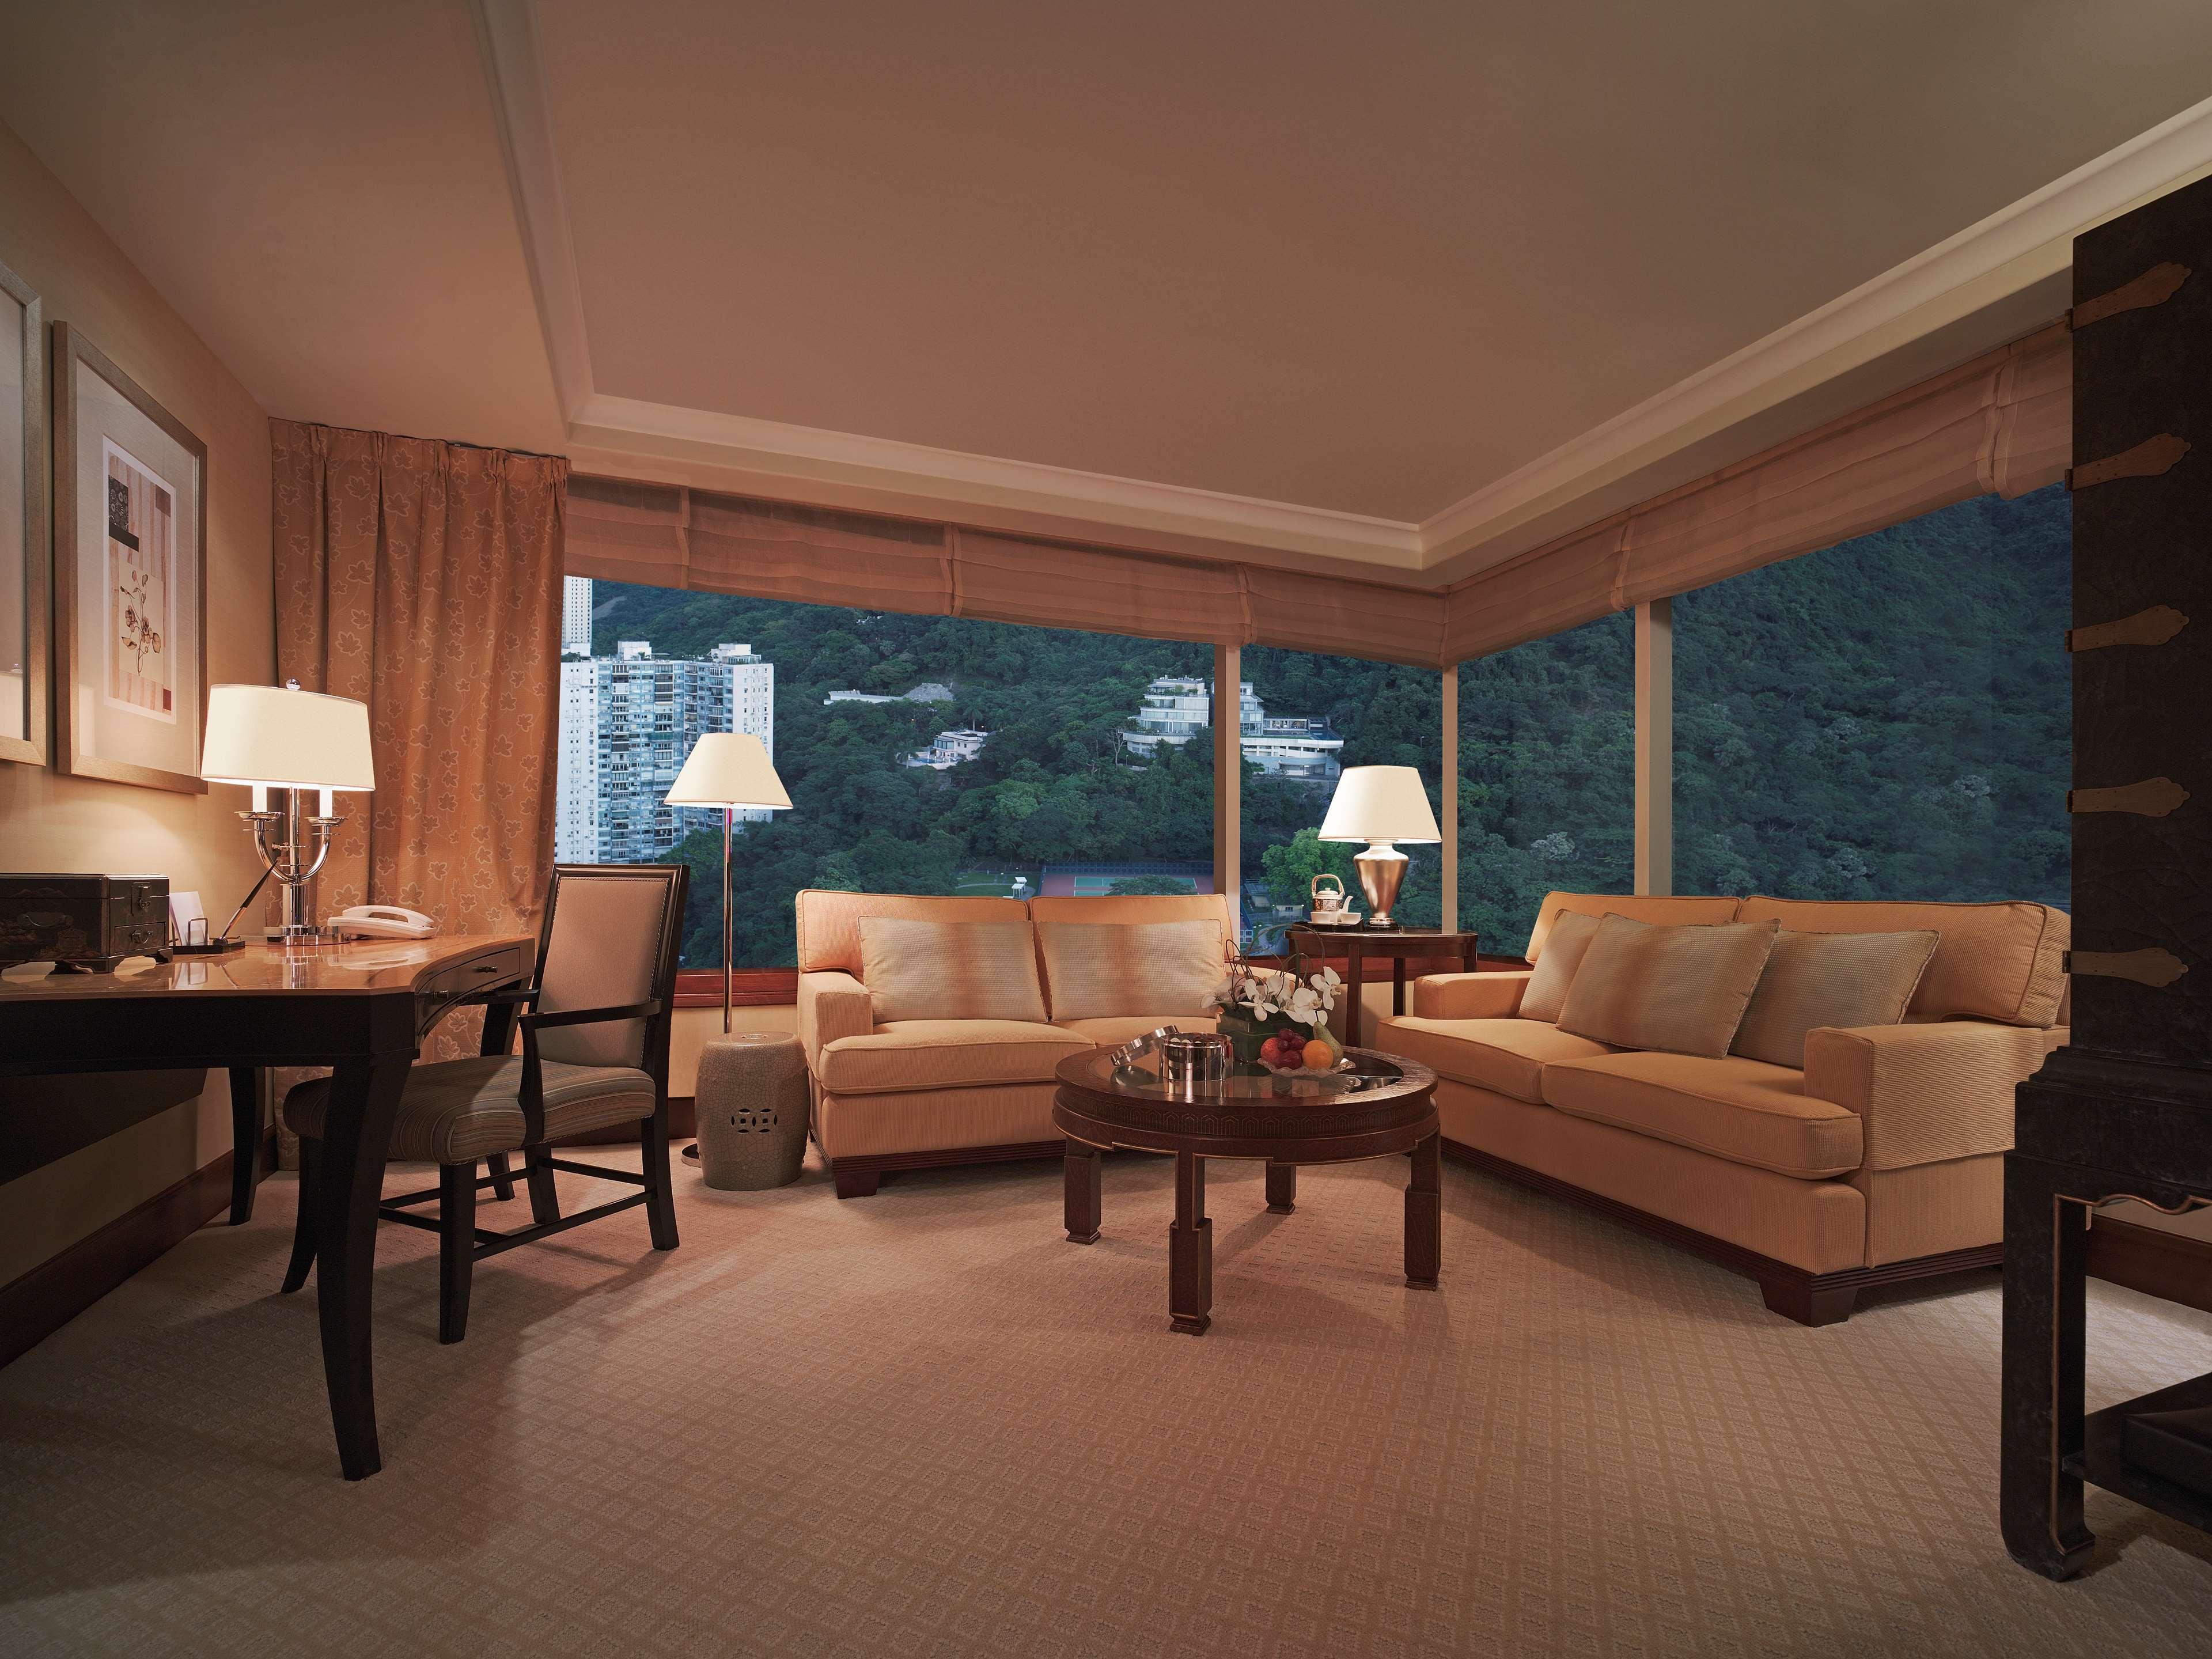 Conrad Hong Kong Hotel Room photo